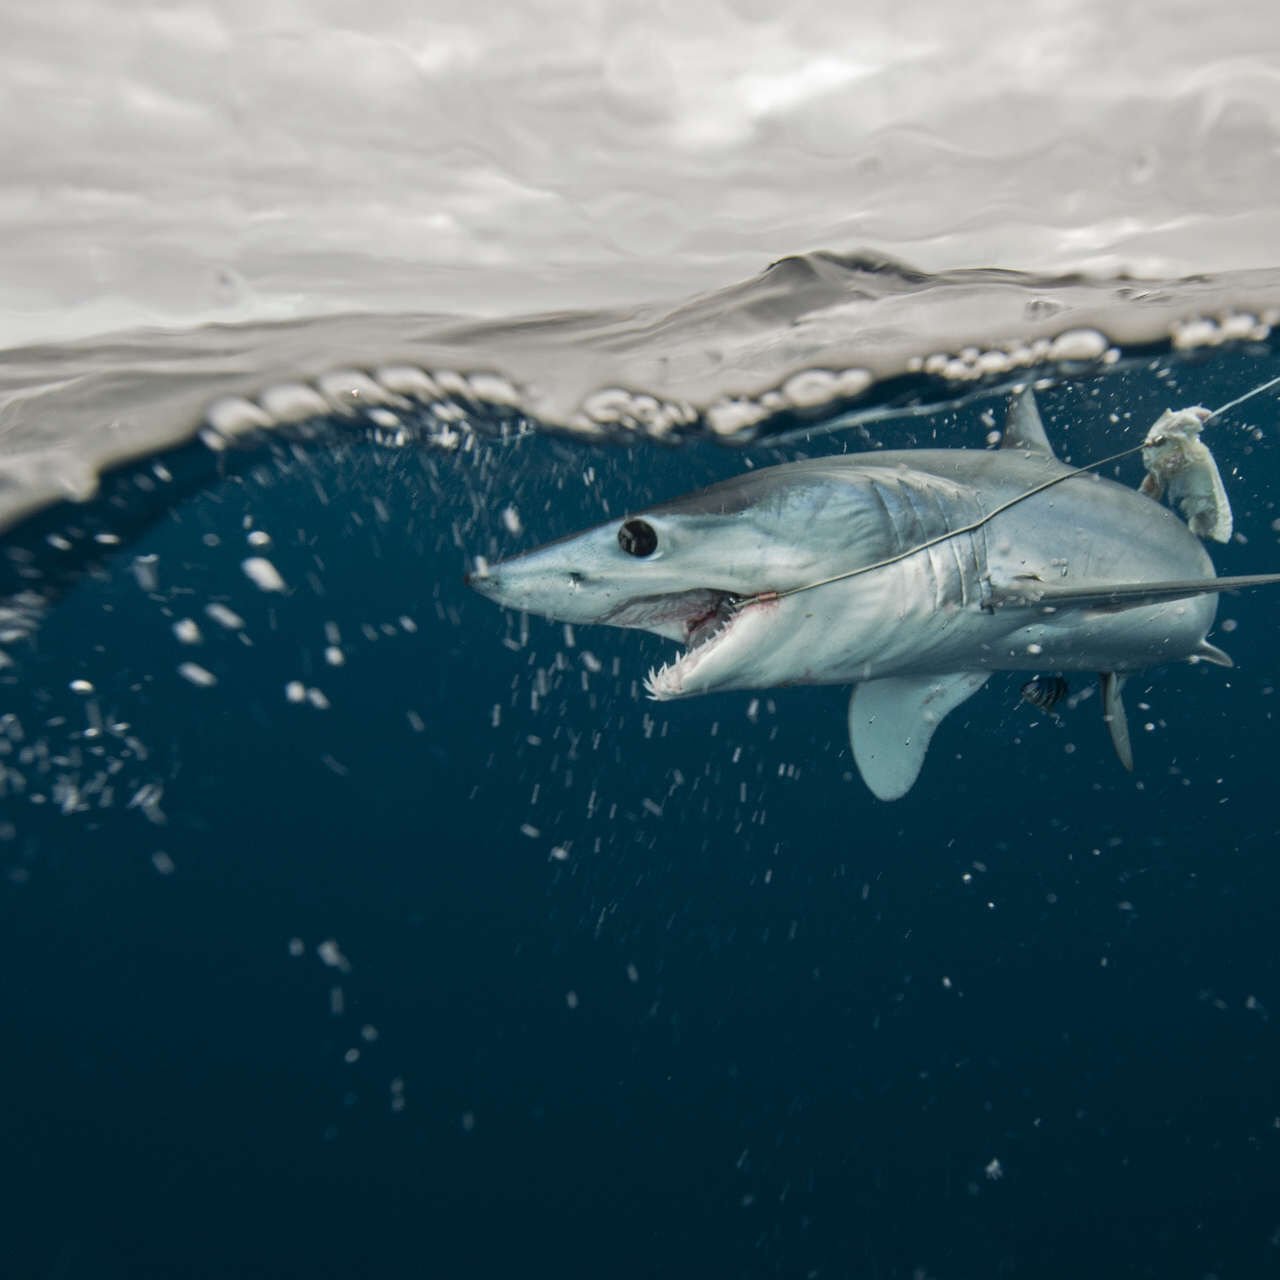 Žraloci: úmrtnost v důsledku rybolovu je stále vyšší